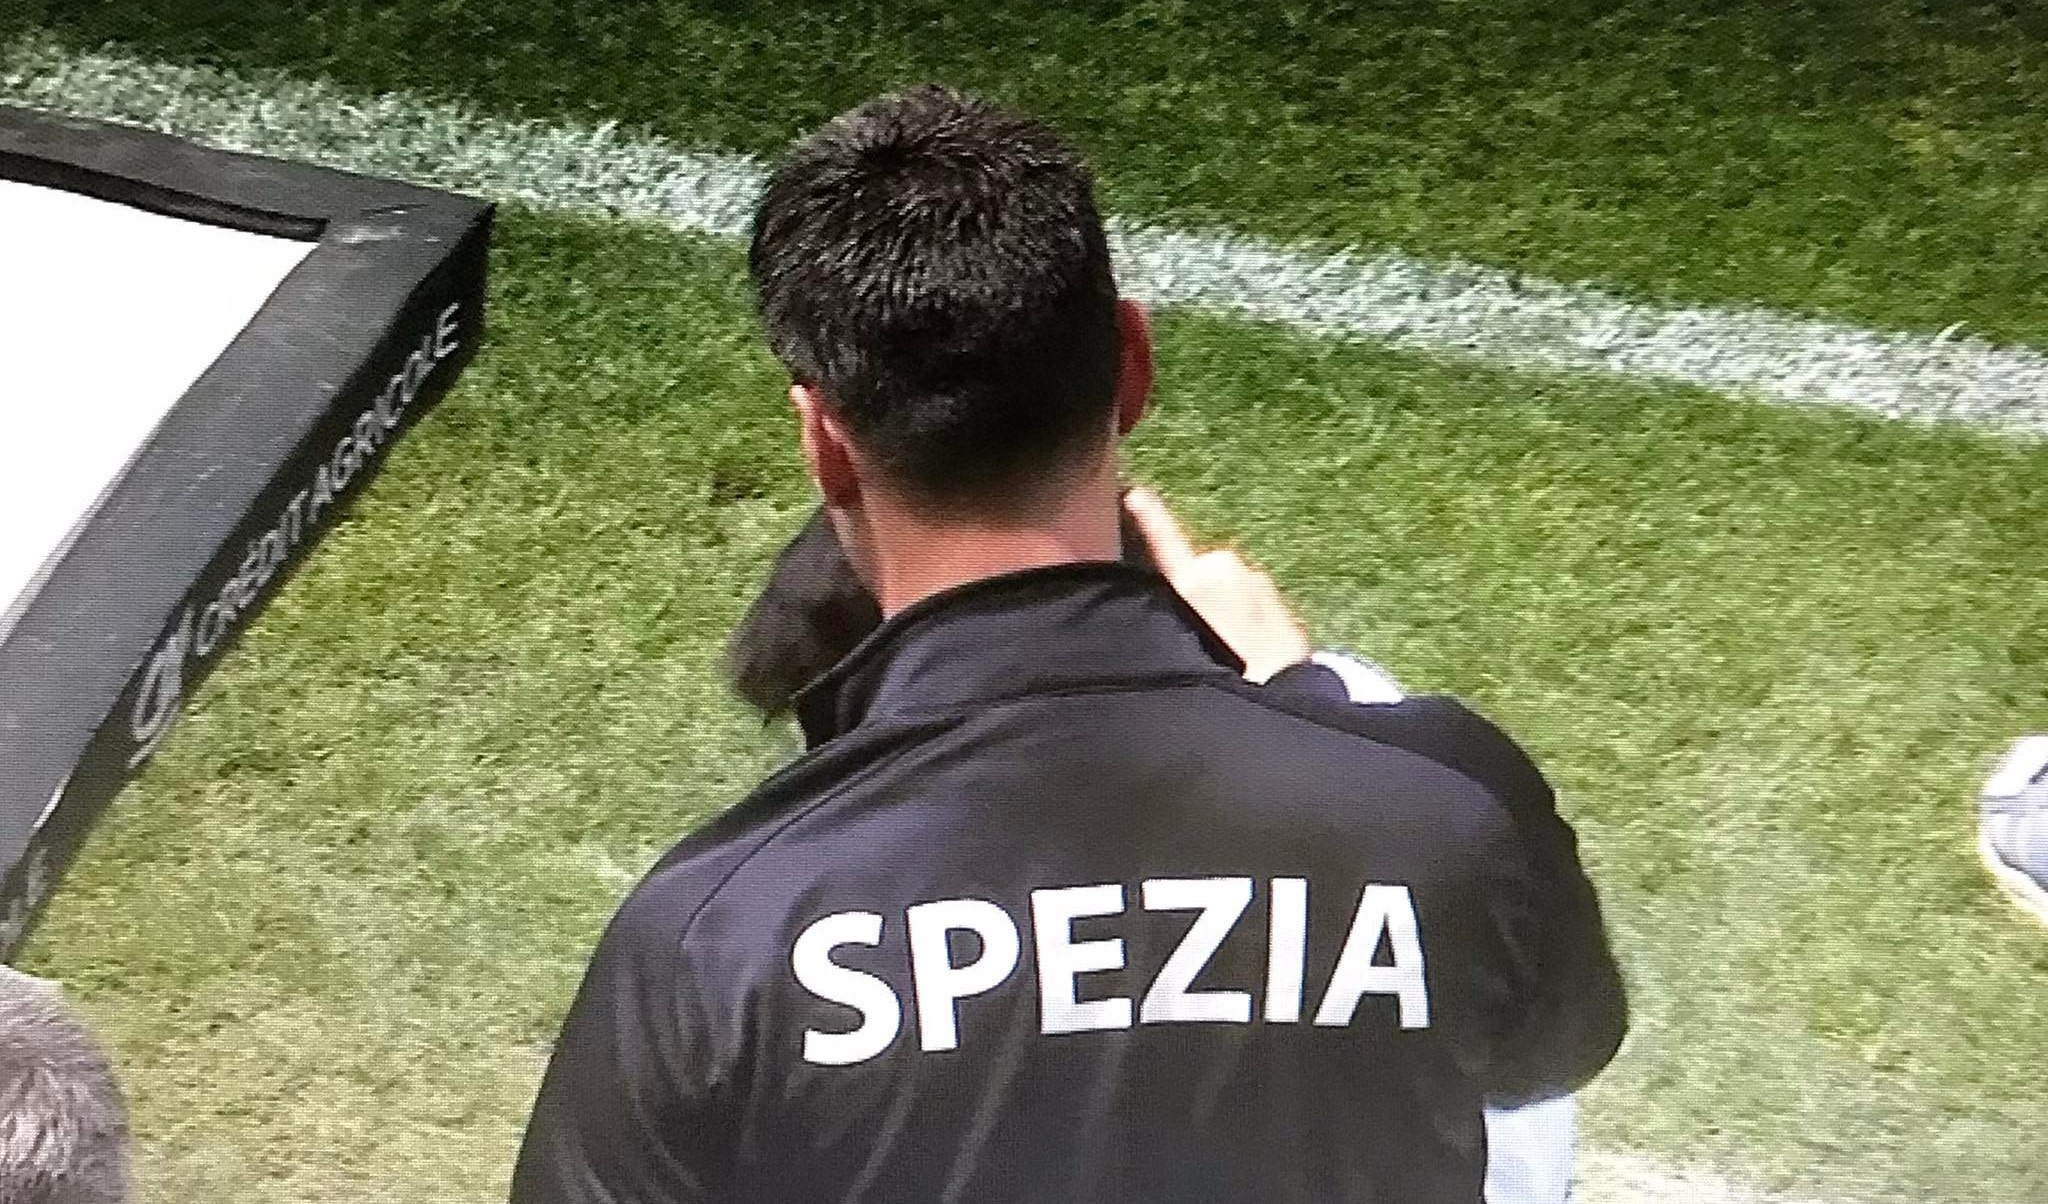 Spezia-Napoli 0-3, festa salvezza rovinata dai tafferugli in curva Piscina